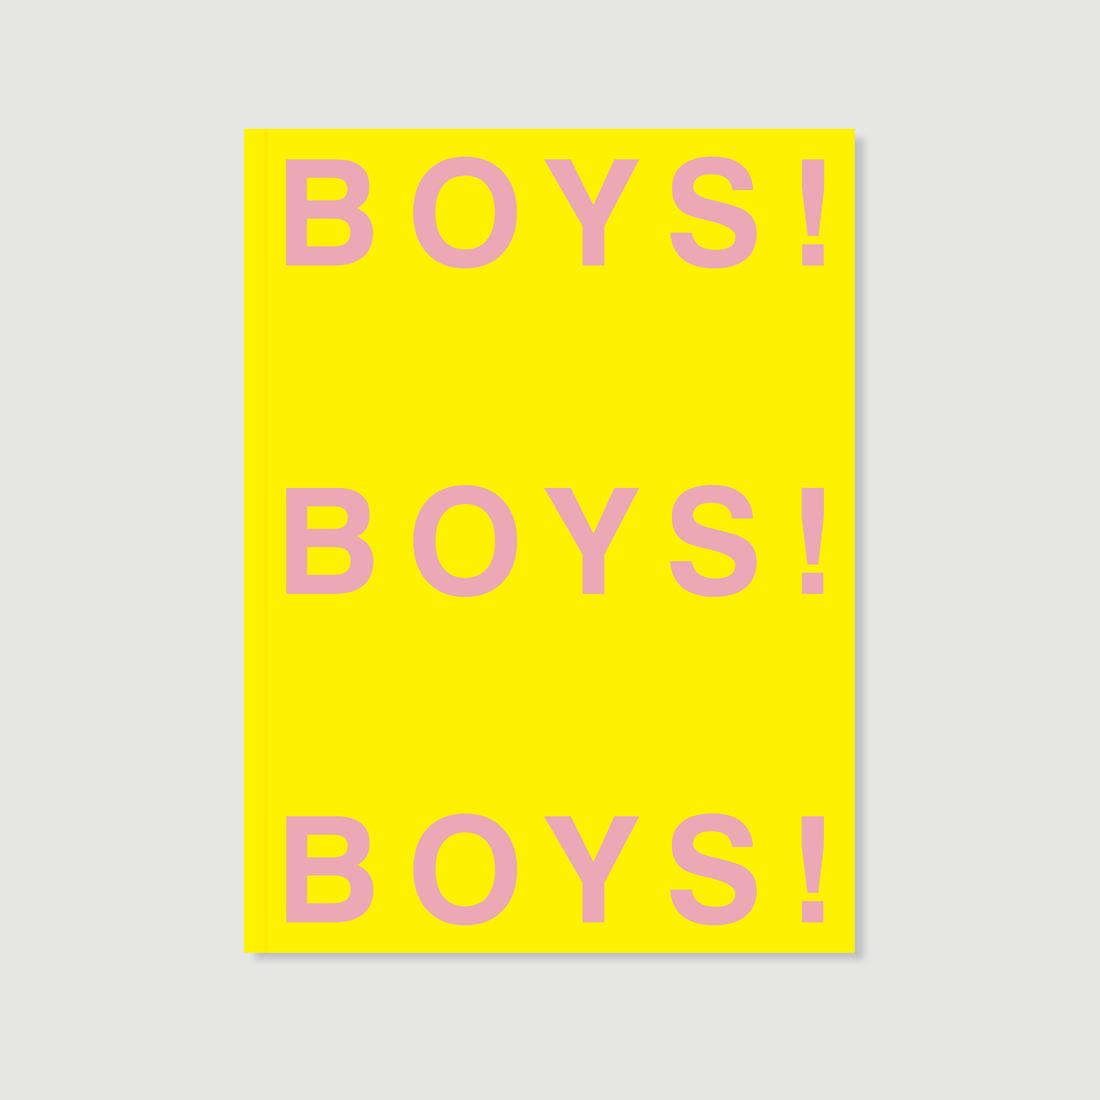 'Boys! Boys! Boys!' continúa luchando contra la censura de Instagram y la homofobia